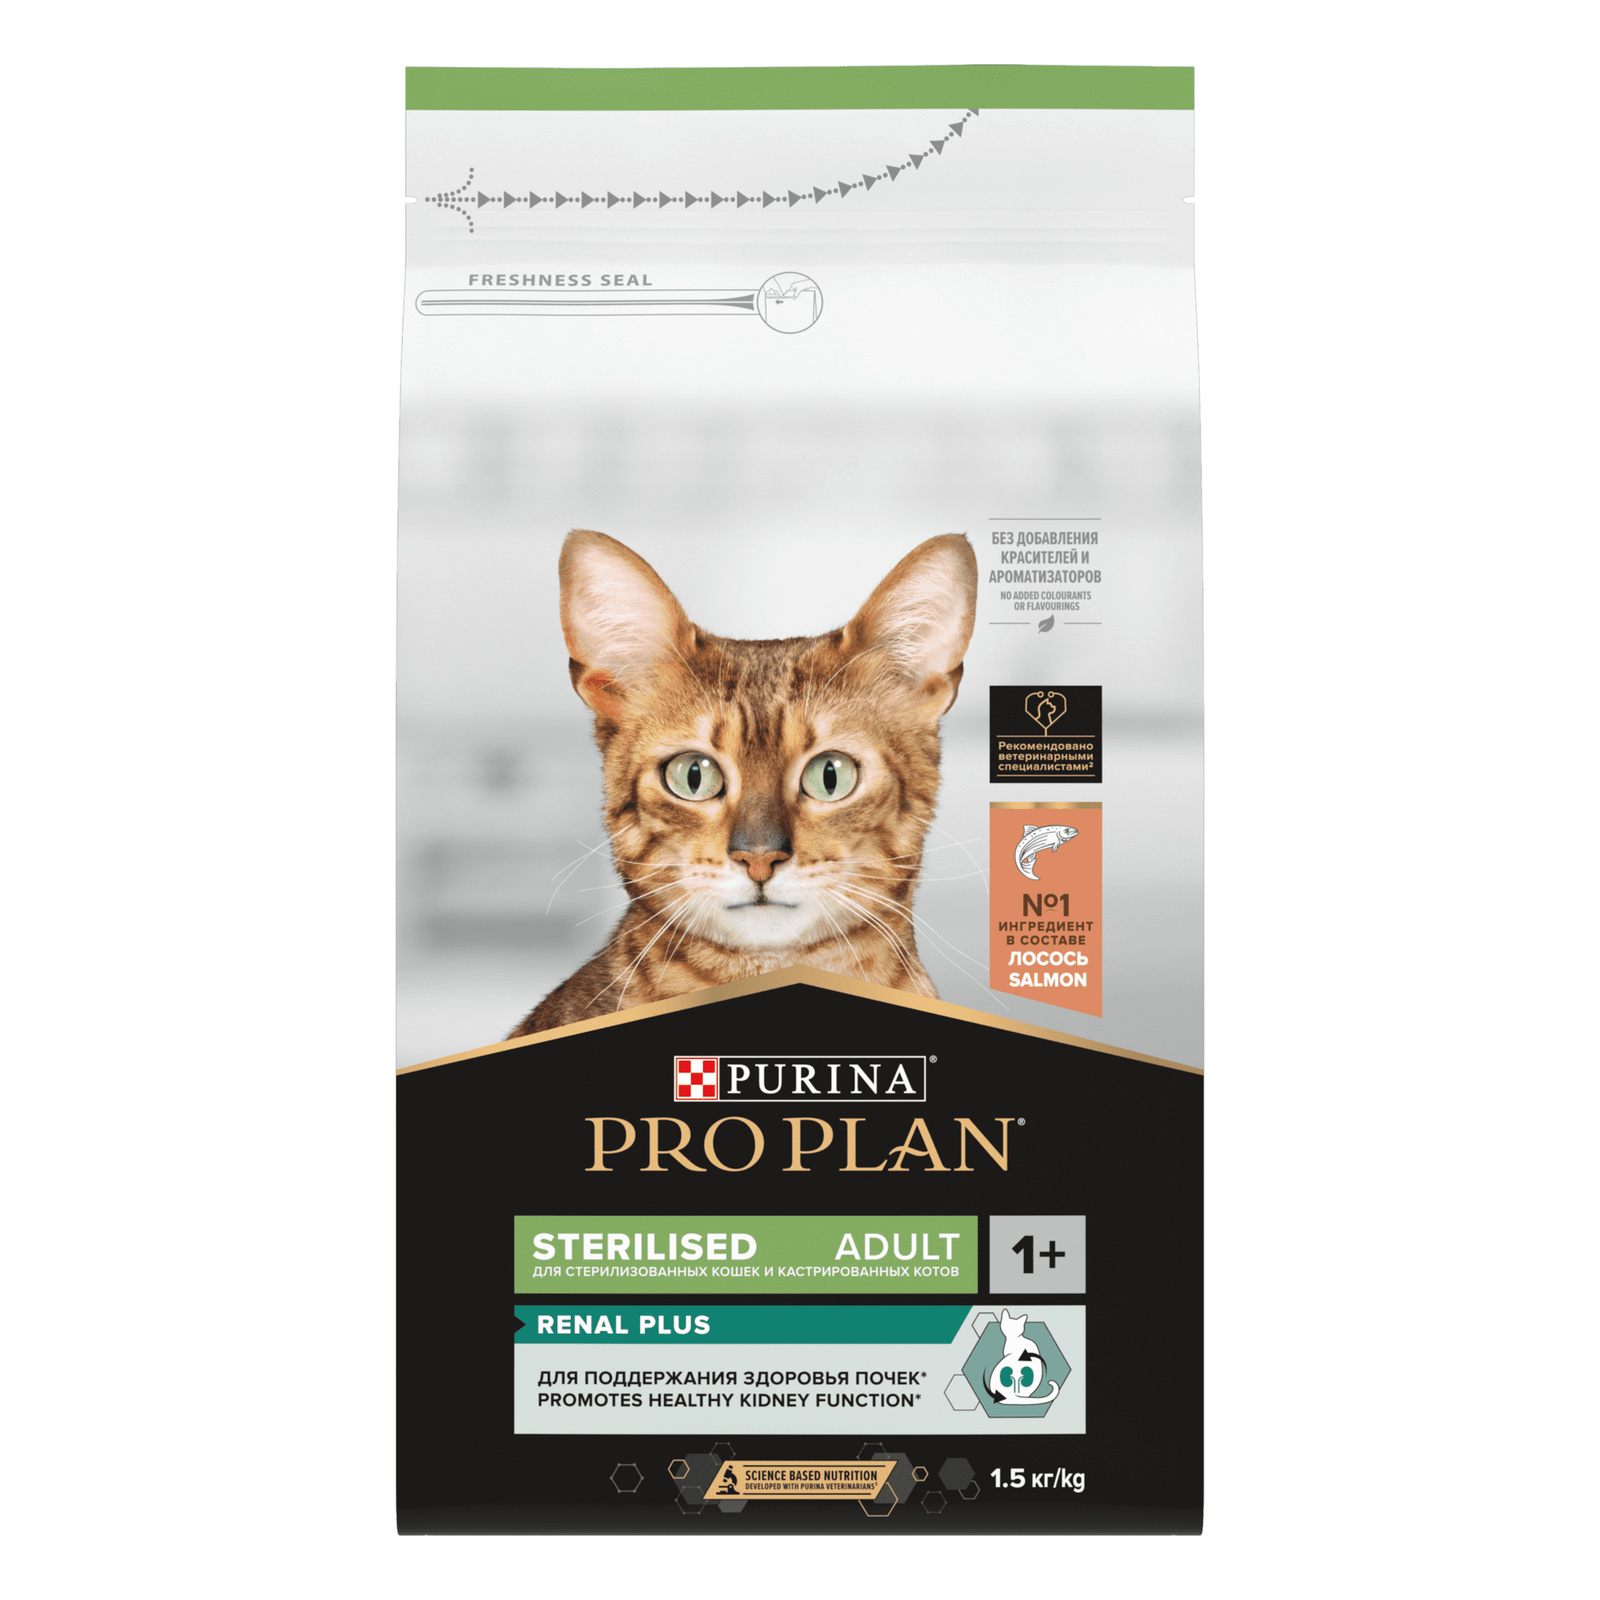 Purina Pro Plan Корм Purina Pro Plan для взрослых стерилизованных кошек и кастрированных котов, с высоким содержанием лосося (10 кг) 22729